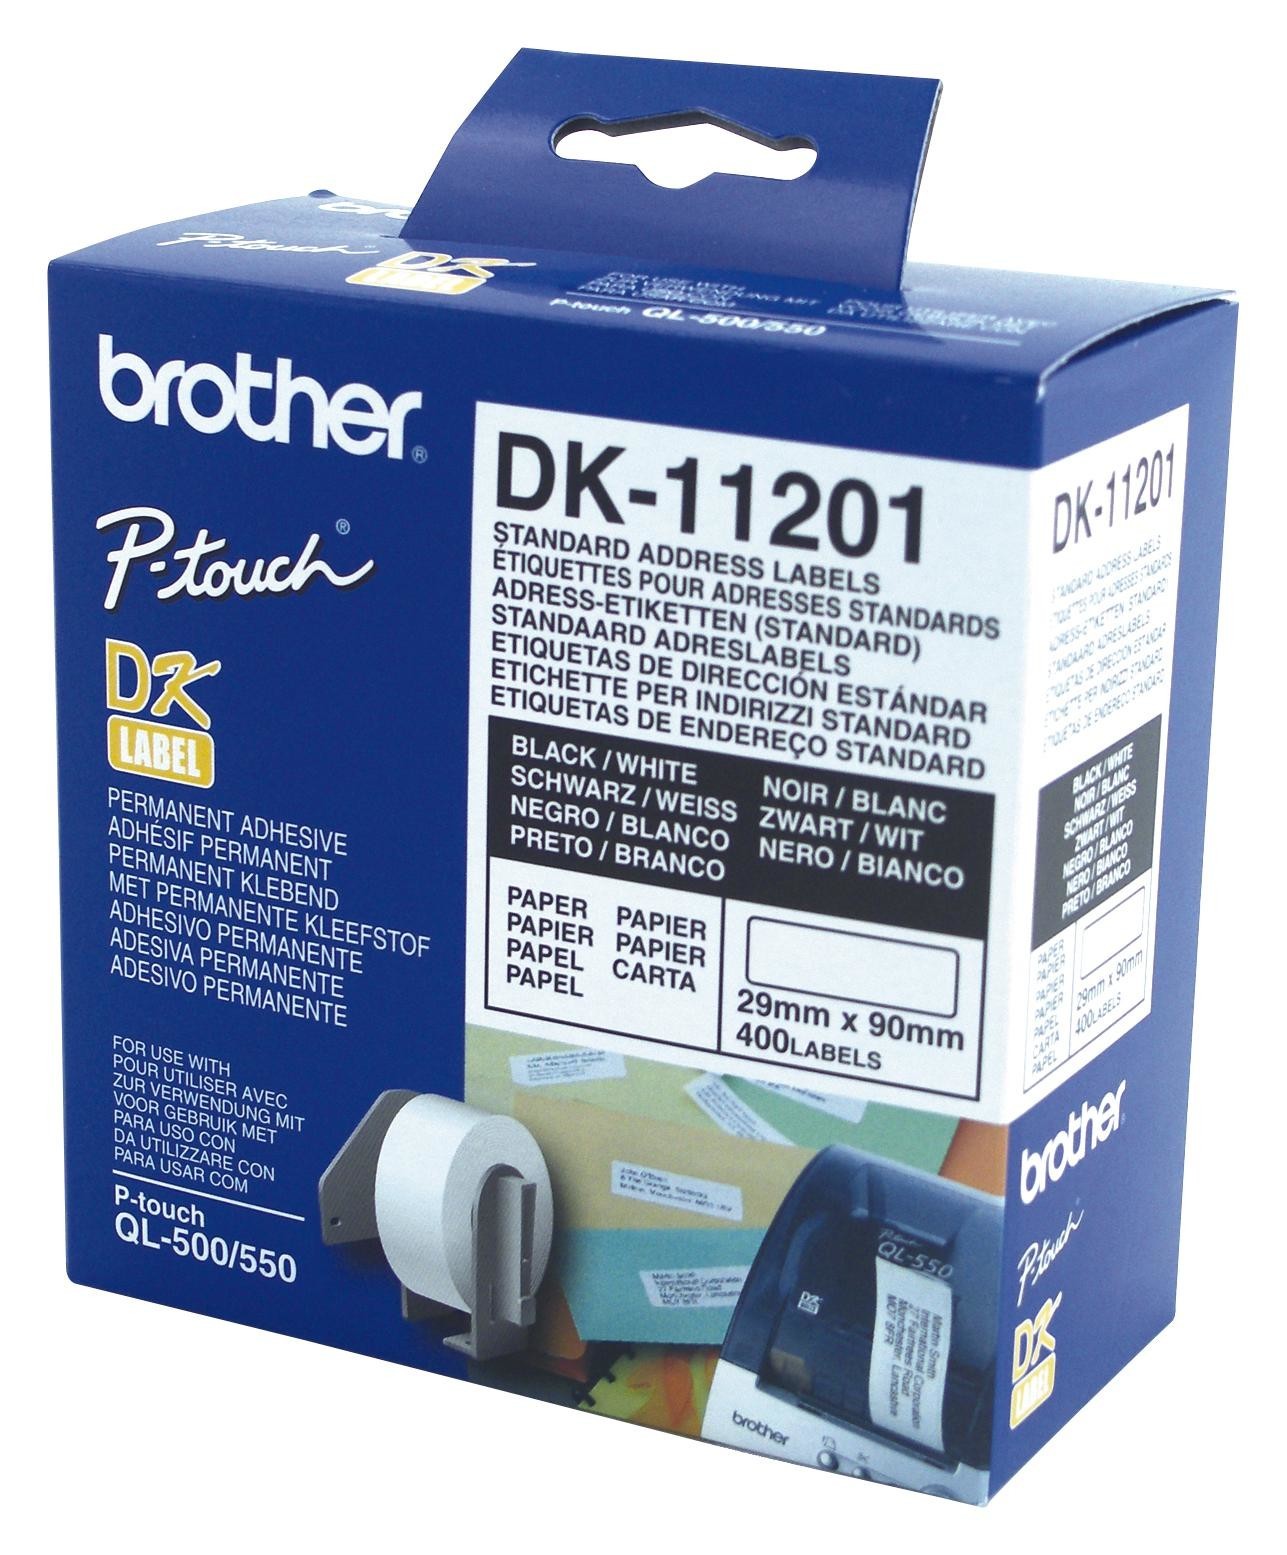 Brother Dk11201 Label, Standard Address